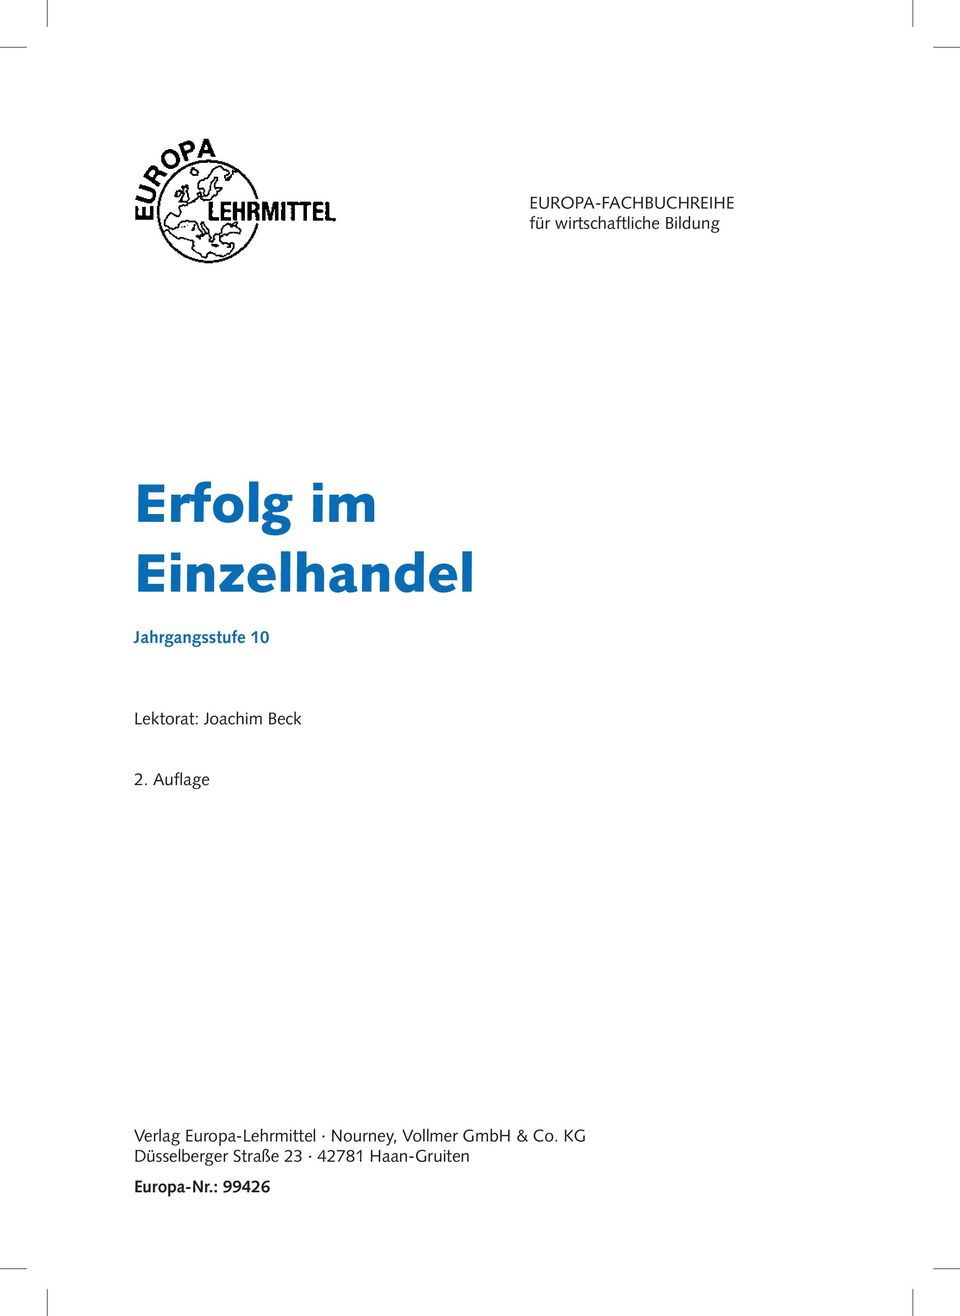 Auflage Verlag Europa-Lehrmittel Nourney, Vollmer GmbH & Co.